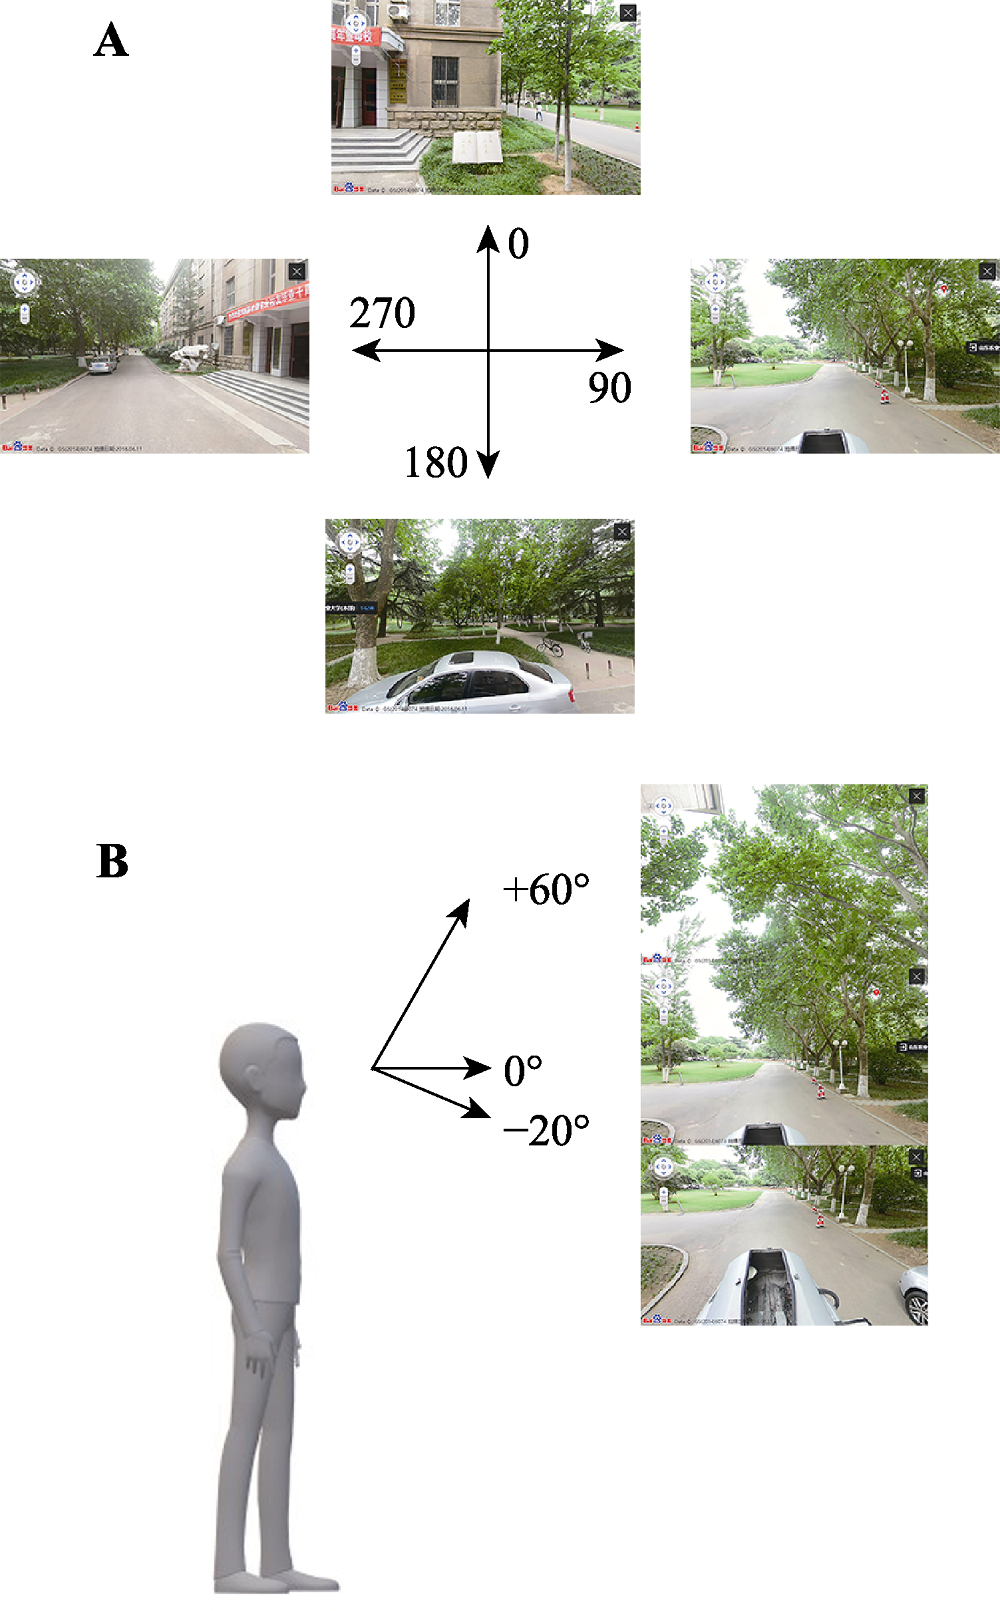 Pedestrian-view urban street vegetation monitoring using Baidu 